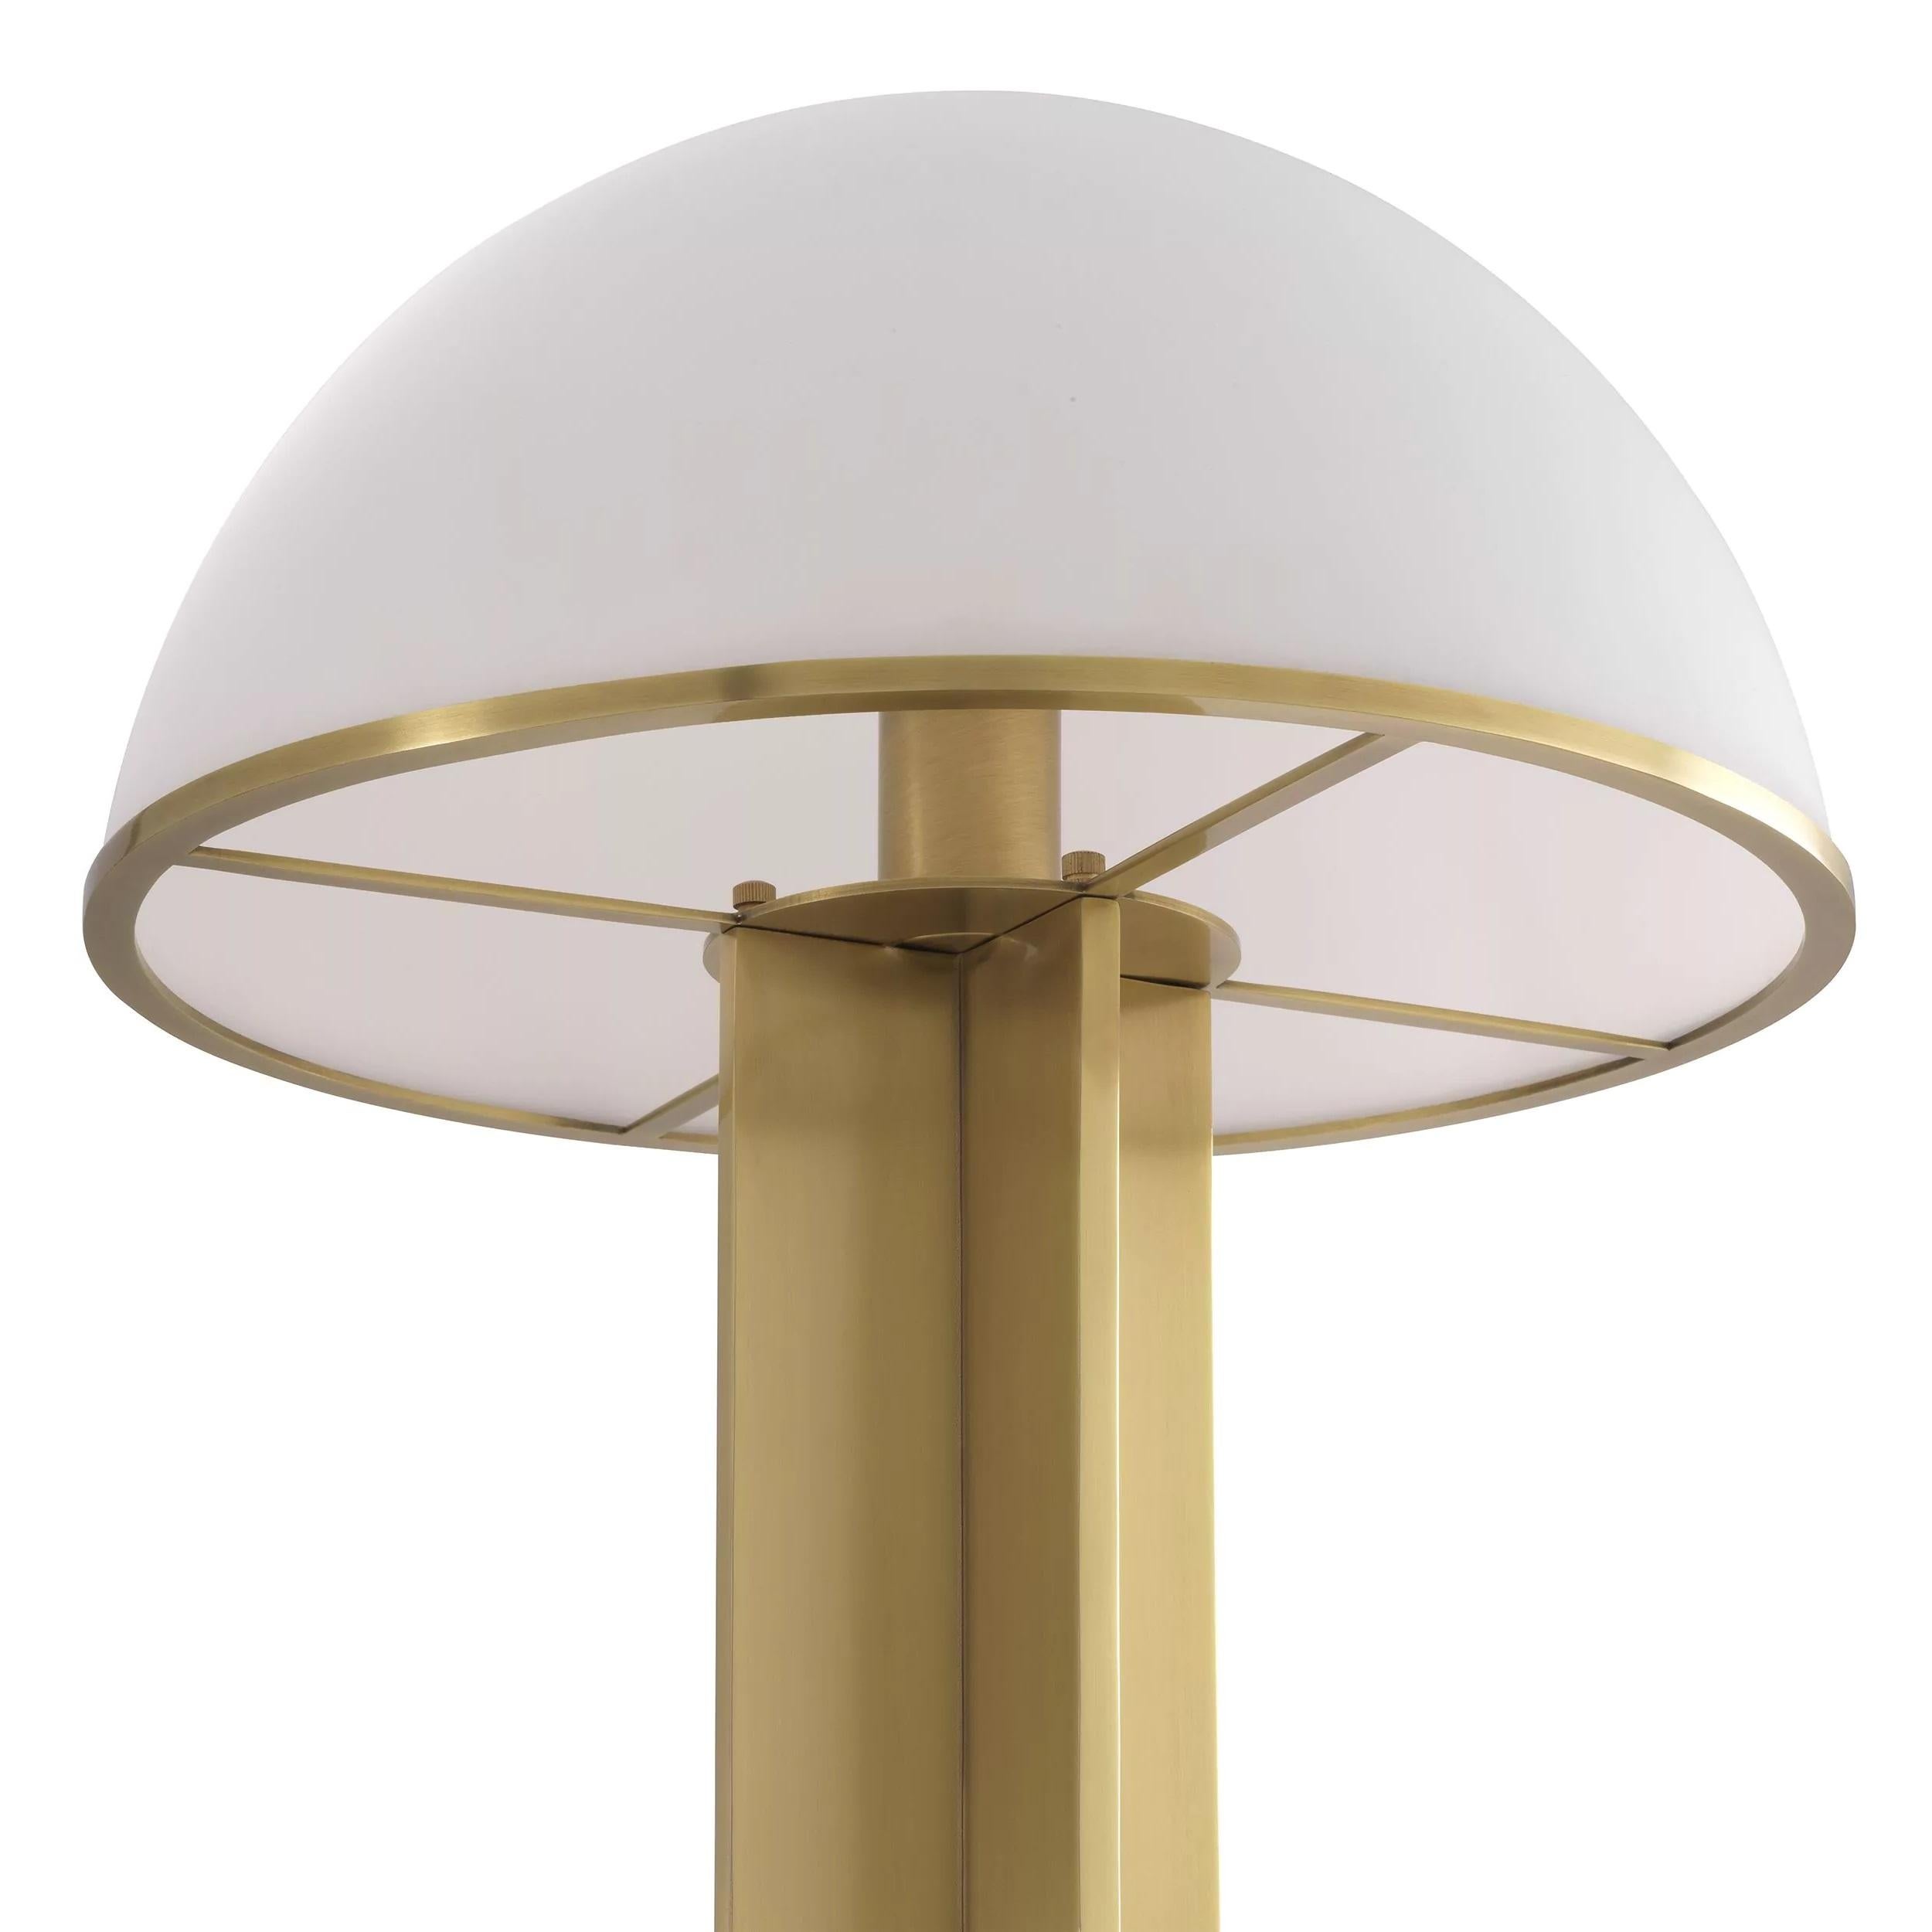 Stehlampe aus Messing und weißem Opalglas im Stil des Art déco und der 1920er Jahre, bestehend aus einer Metallstruktur in Messingoptik und einem handgefertigten Schirm aus weißem Opalglas in Pilzform. 1 E27 Glühbirne erforderlich.